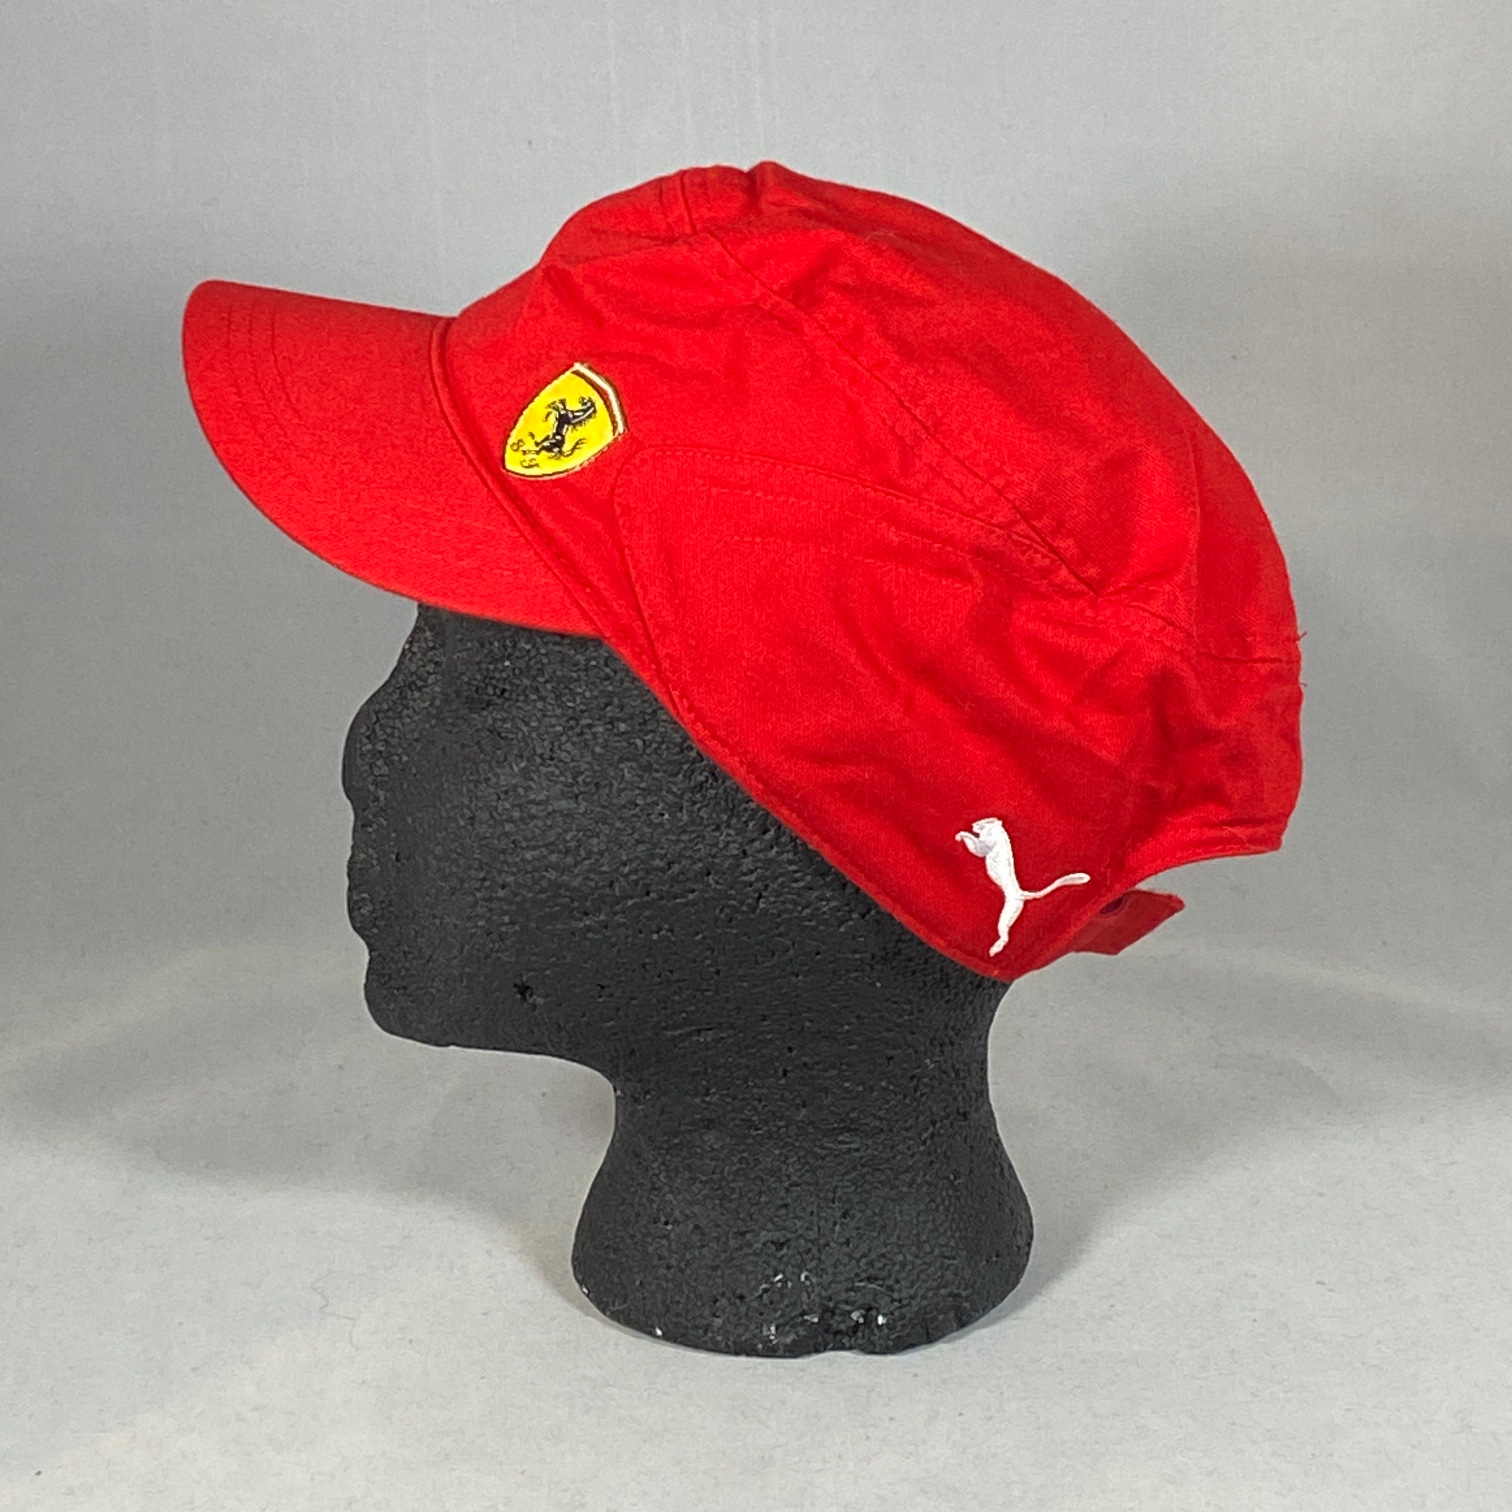 PUMA Scuderia Ferrari Hat Adult One Size Red Strapback Baseball Cap F1 Formula 1